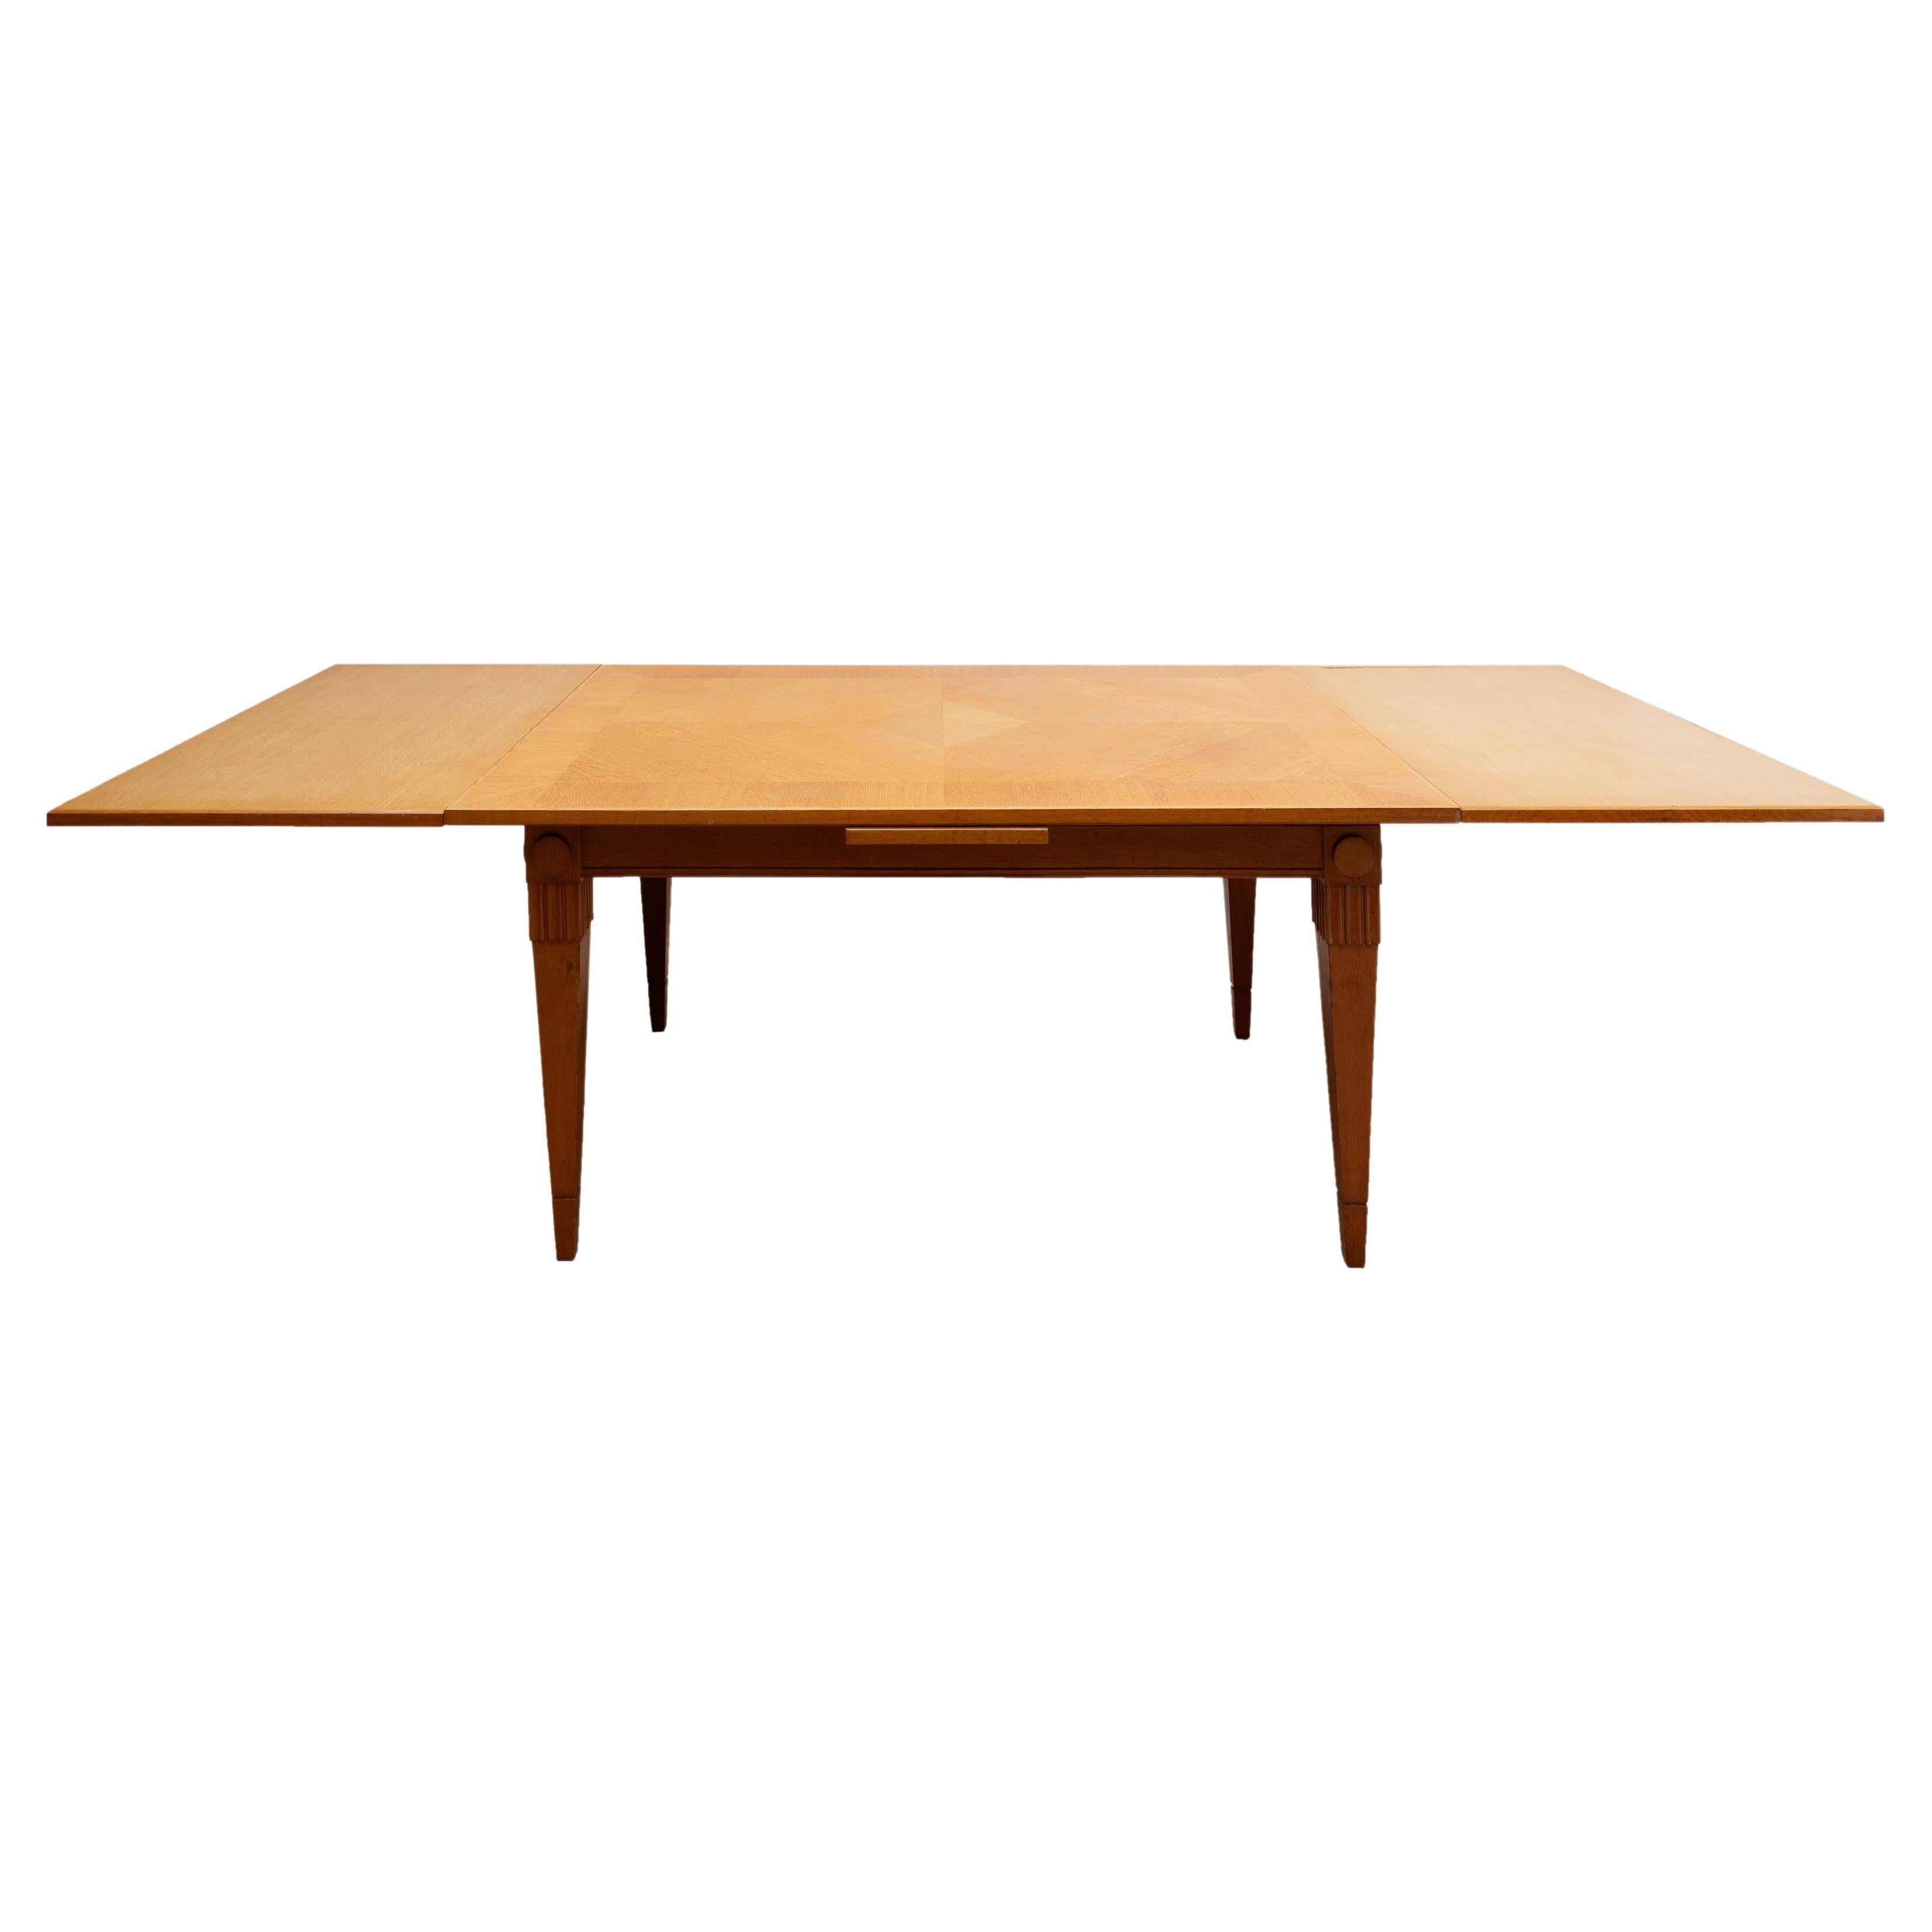 Belgischer Esstisch von De Coene Frères aus den 1940er Jahren in gutem Originalzustand mit ausziehbaren Tabletts, die sich unter der Tischplatte befinden und den Tisch leicht erweitern und vergrößern können.